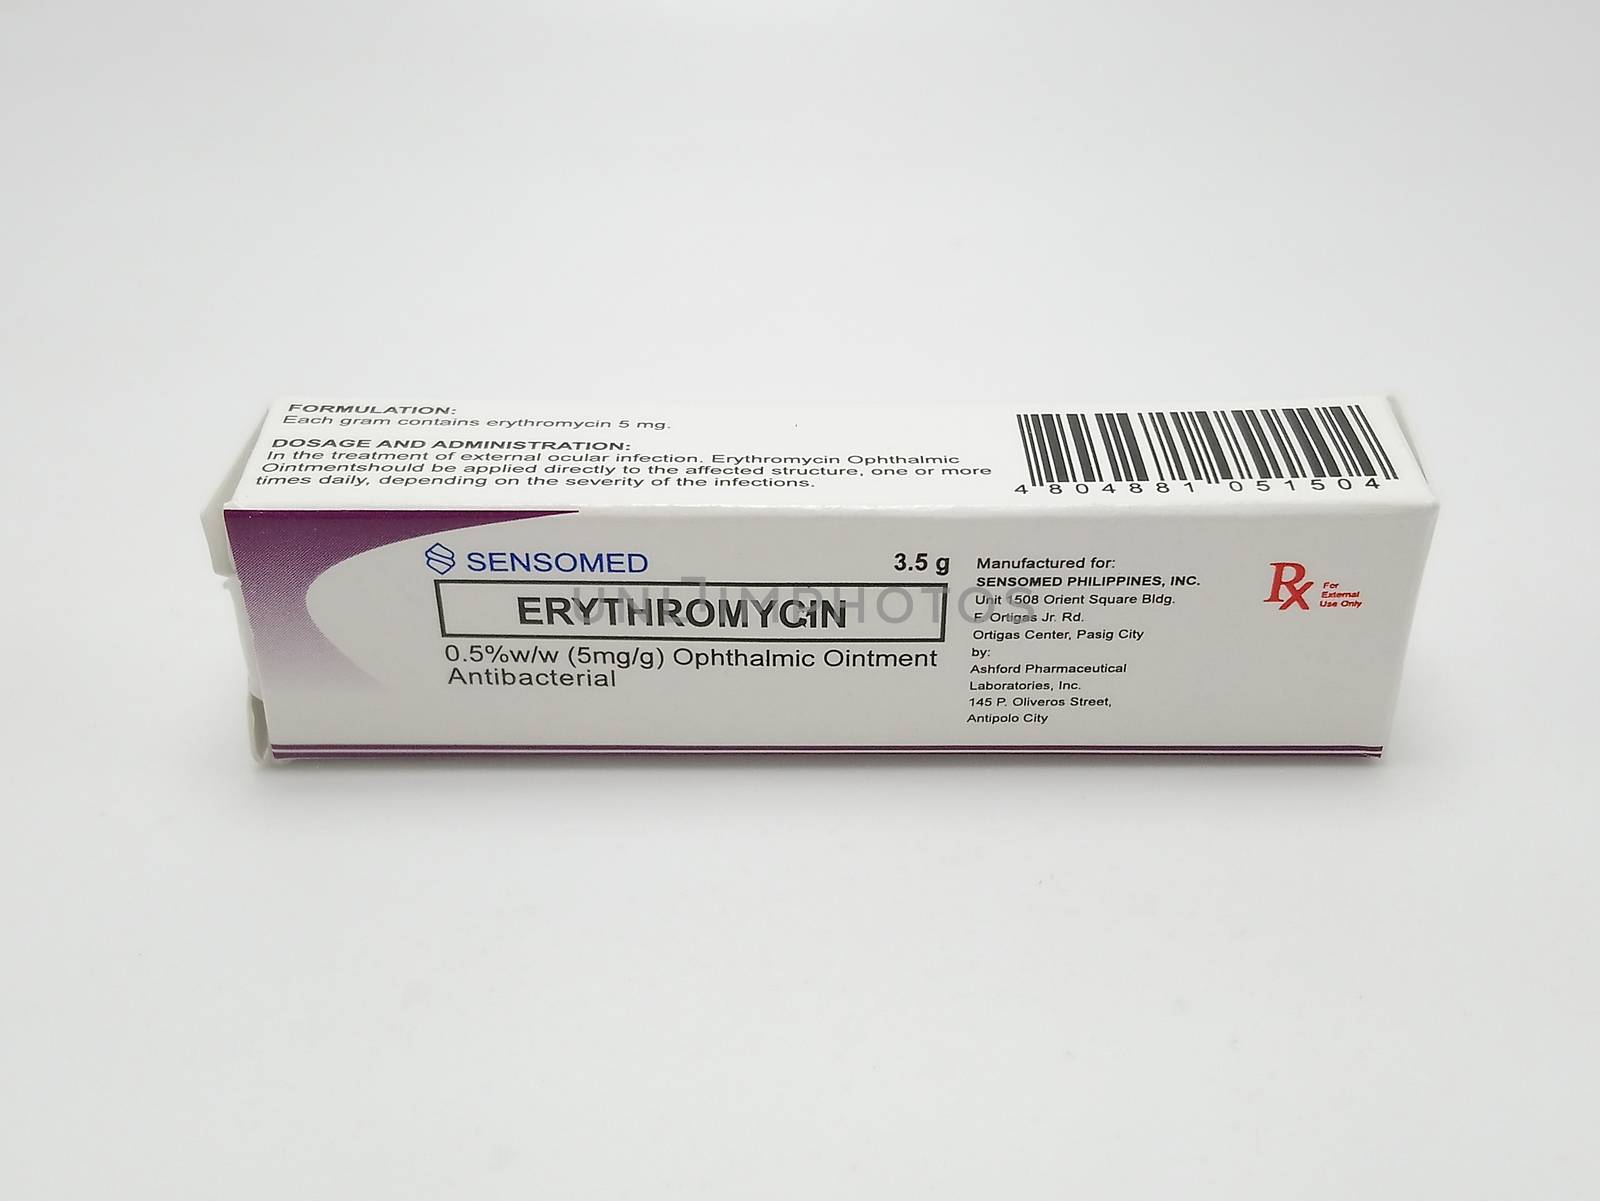 MANILA, PH - SEPT 25 - Sensomed erythromycin ointment box on September 25, 2020 in Manila, Philippines.